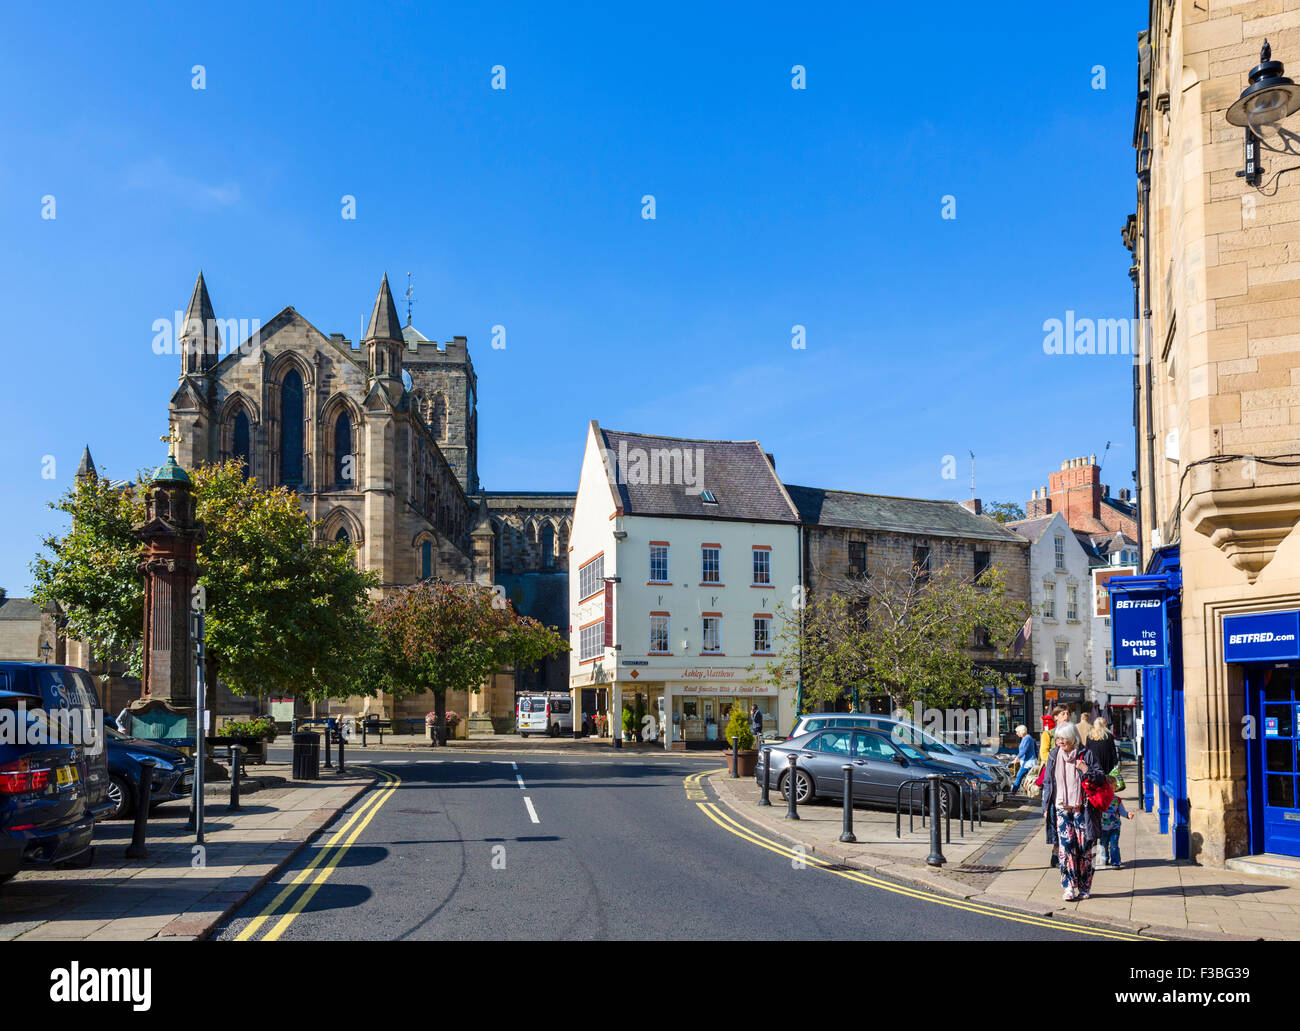 La Place du marché dans le centre-ville en direction de l'abbaye, Hexham, Northumberland, England, UK Banque D'Images